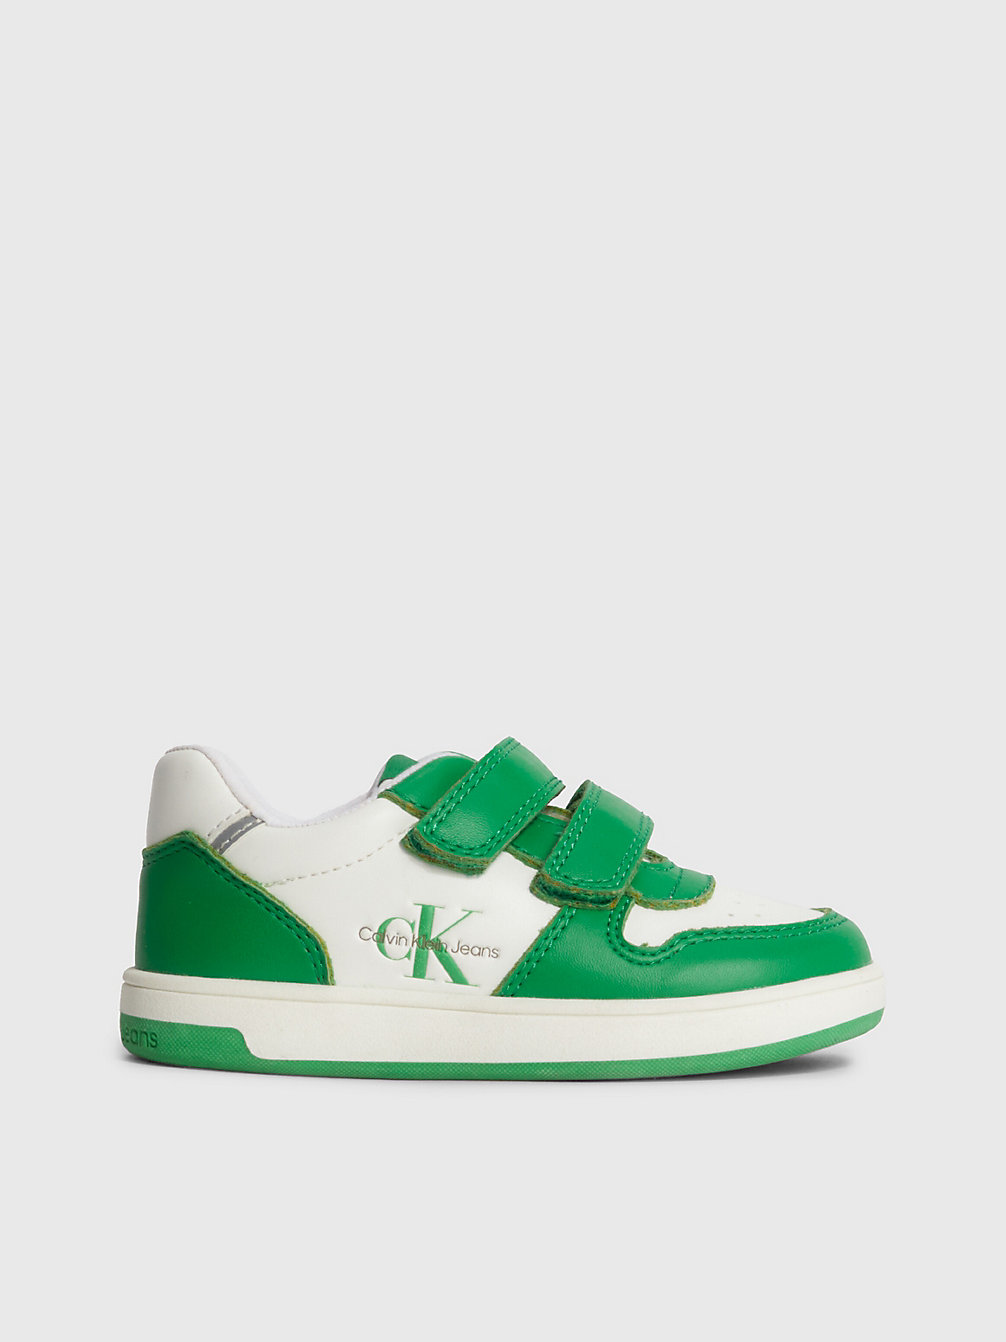 GREEN/WHITE Sneakers Mit Klettverschluss Für Kleinkinder Und Kinder undefined kids unisex Calvin Klein